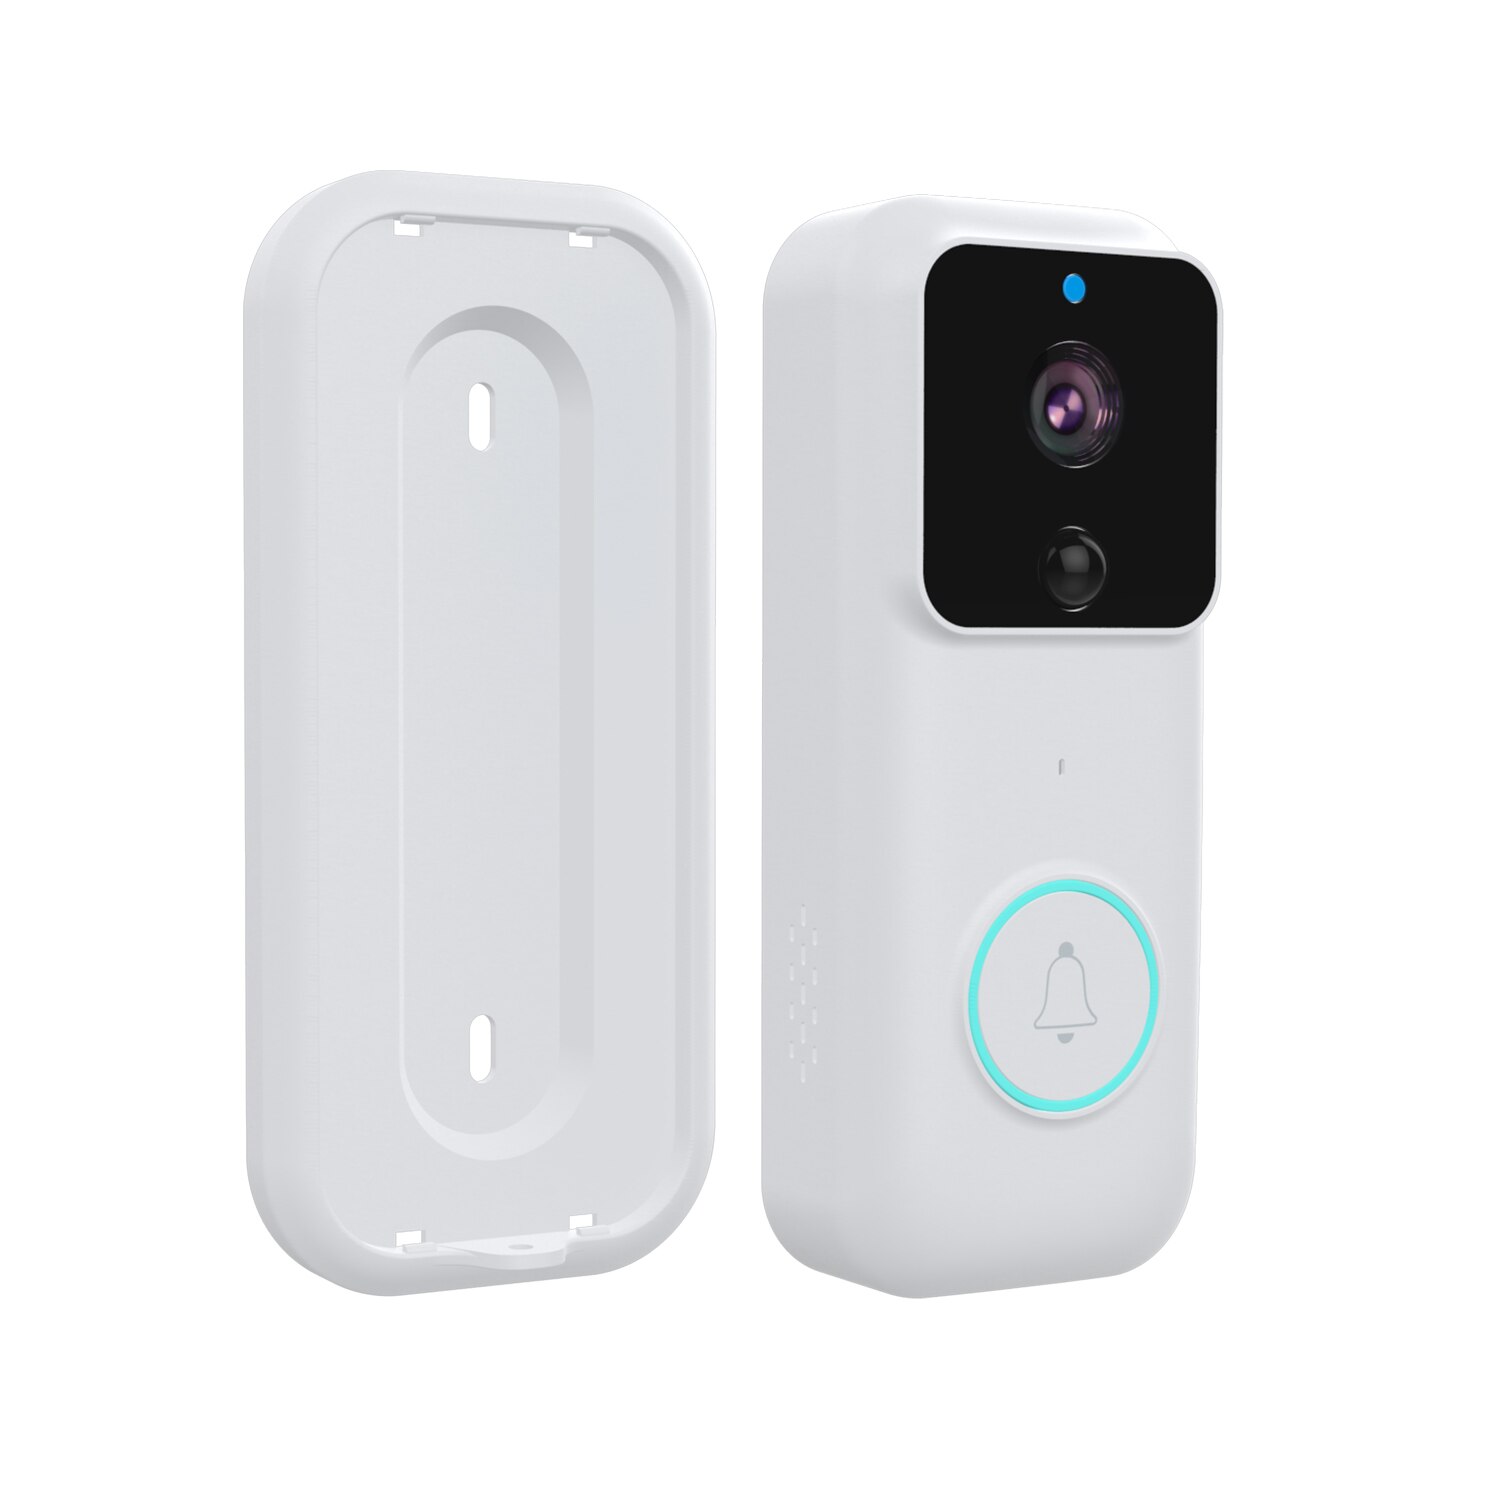 Tuya Smart Doorbell 1080P HD Wireless Intercom Night Vision Smart Camera PIR Motion Detect Alarm Smart Security Doorbell Camera